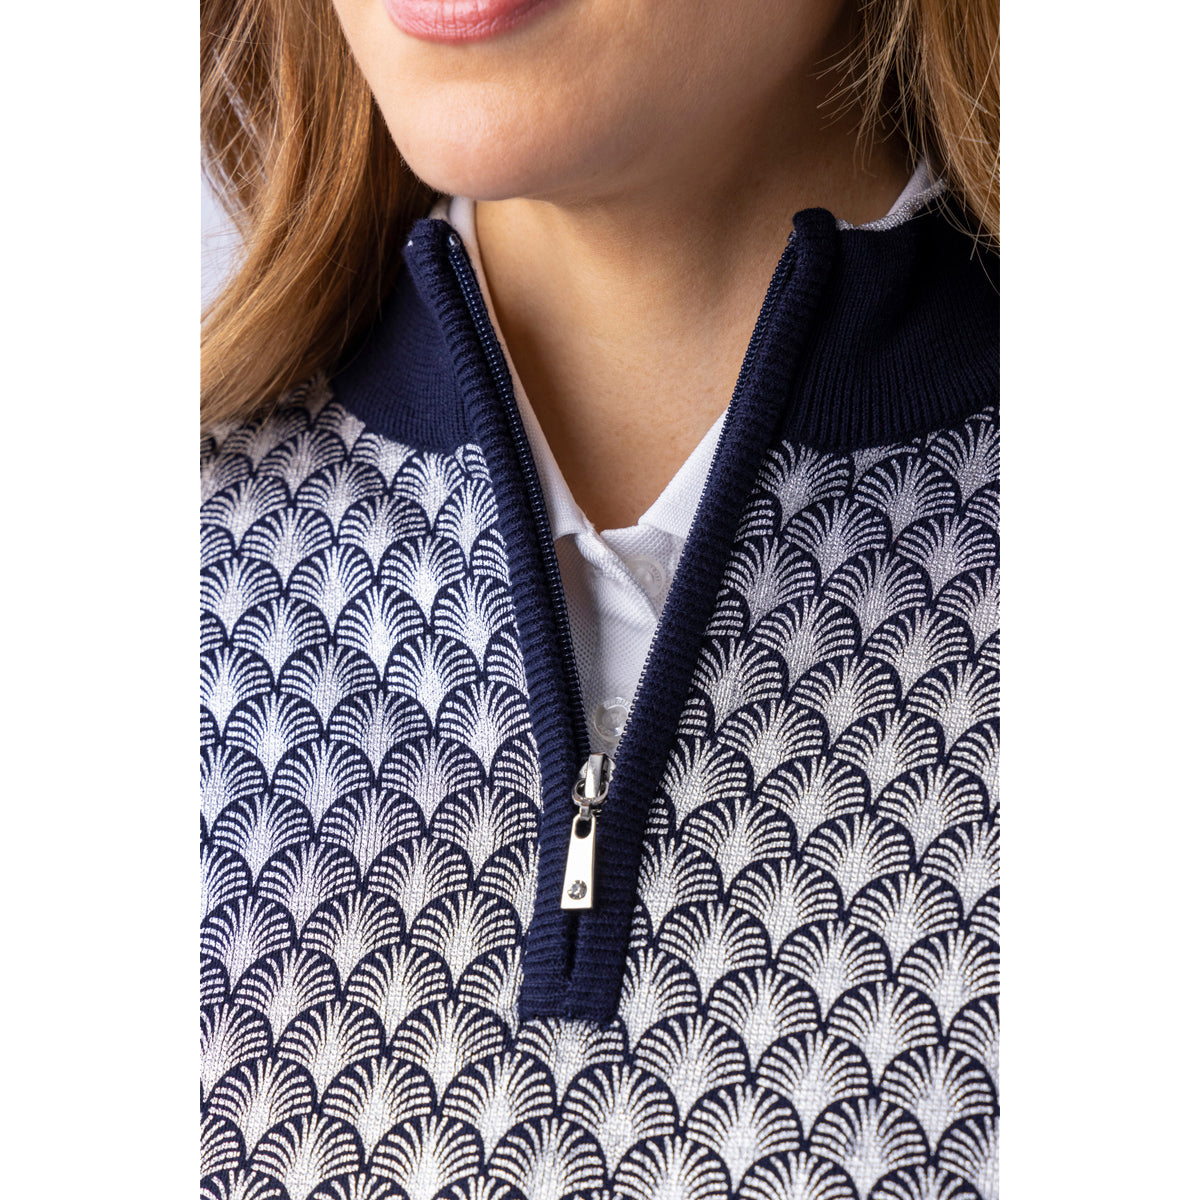 Glenmuir Ladies Etta Long Sleeve 1/4 Zip Sweater in Navy Blue with Silver Foil Fan Print